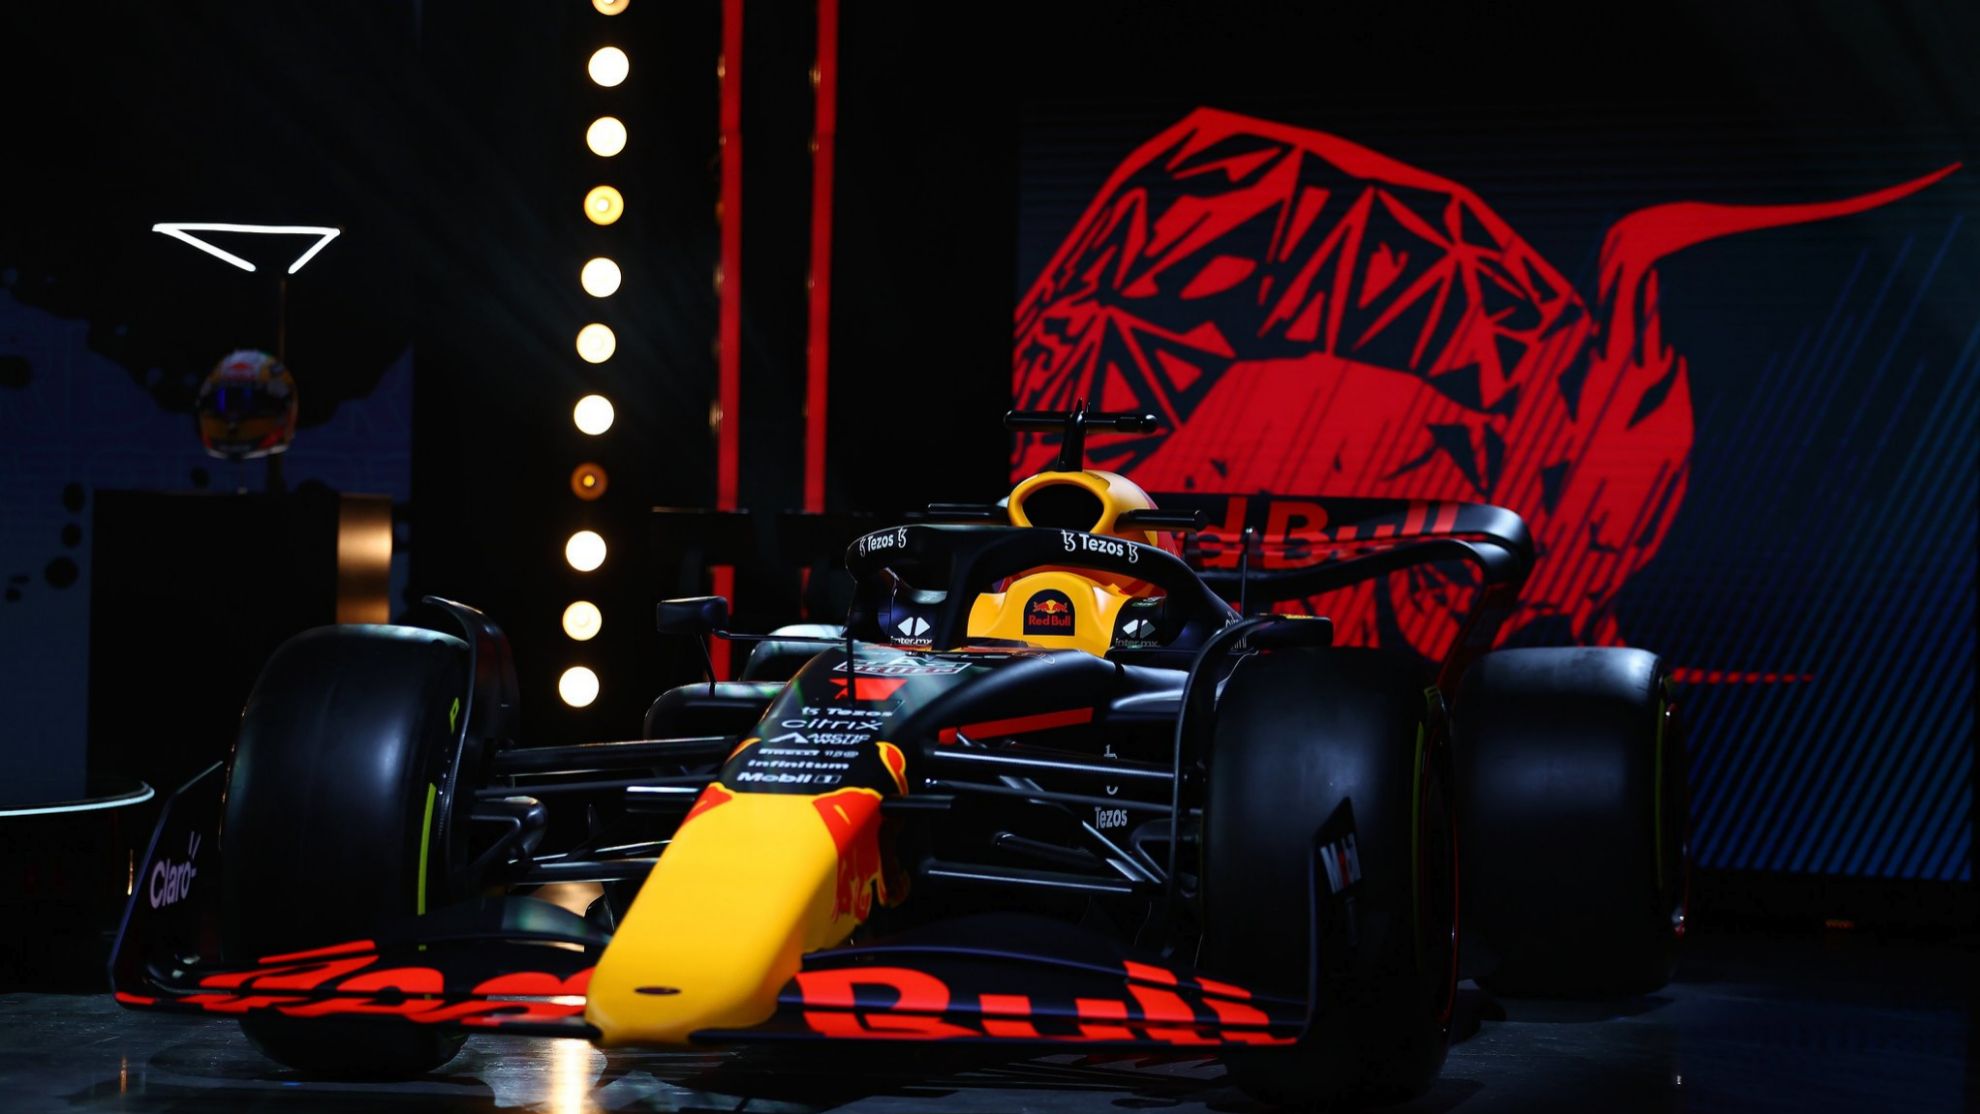 38+] Red Bull F1 2021 White Wallpapers - WallpaperSafari